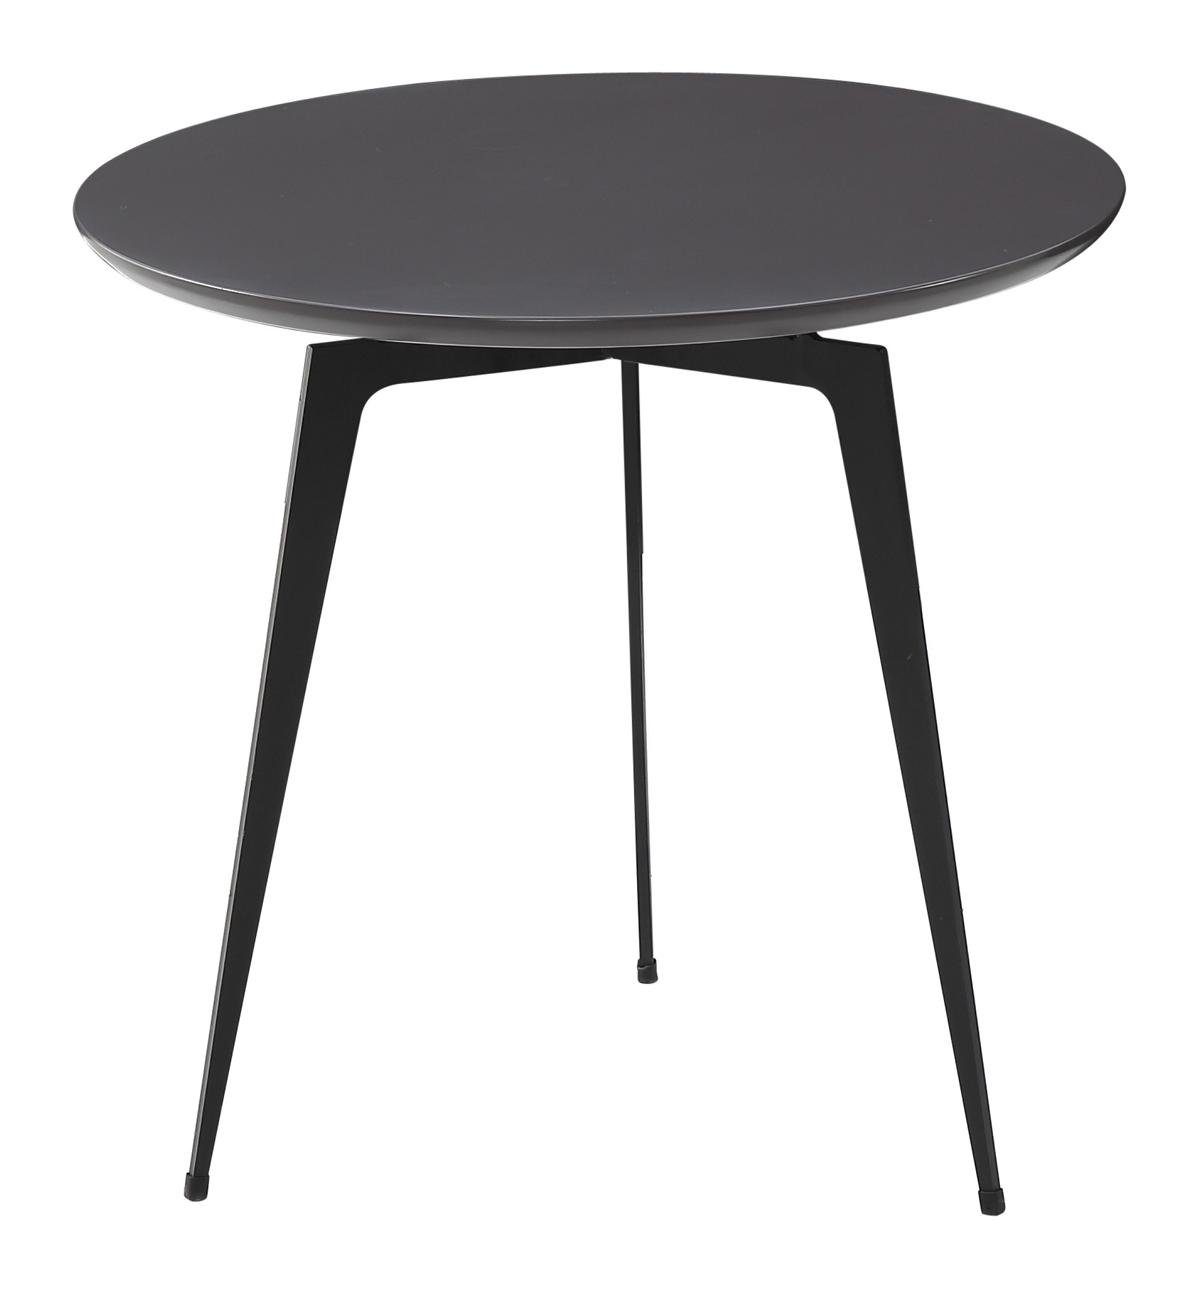 Jafra Couchtisch, Beistelltisch Runder Tisch Couchtisch Sofa Tisch Wohnzimmer Runde Design Tische